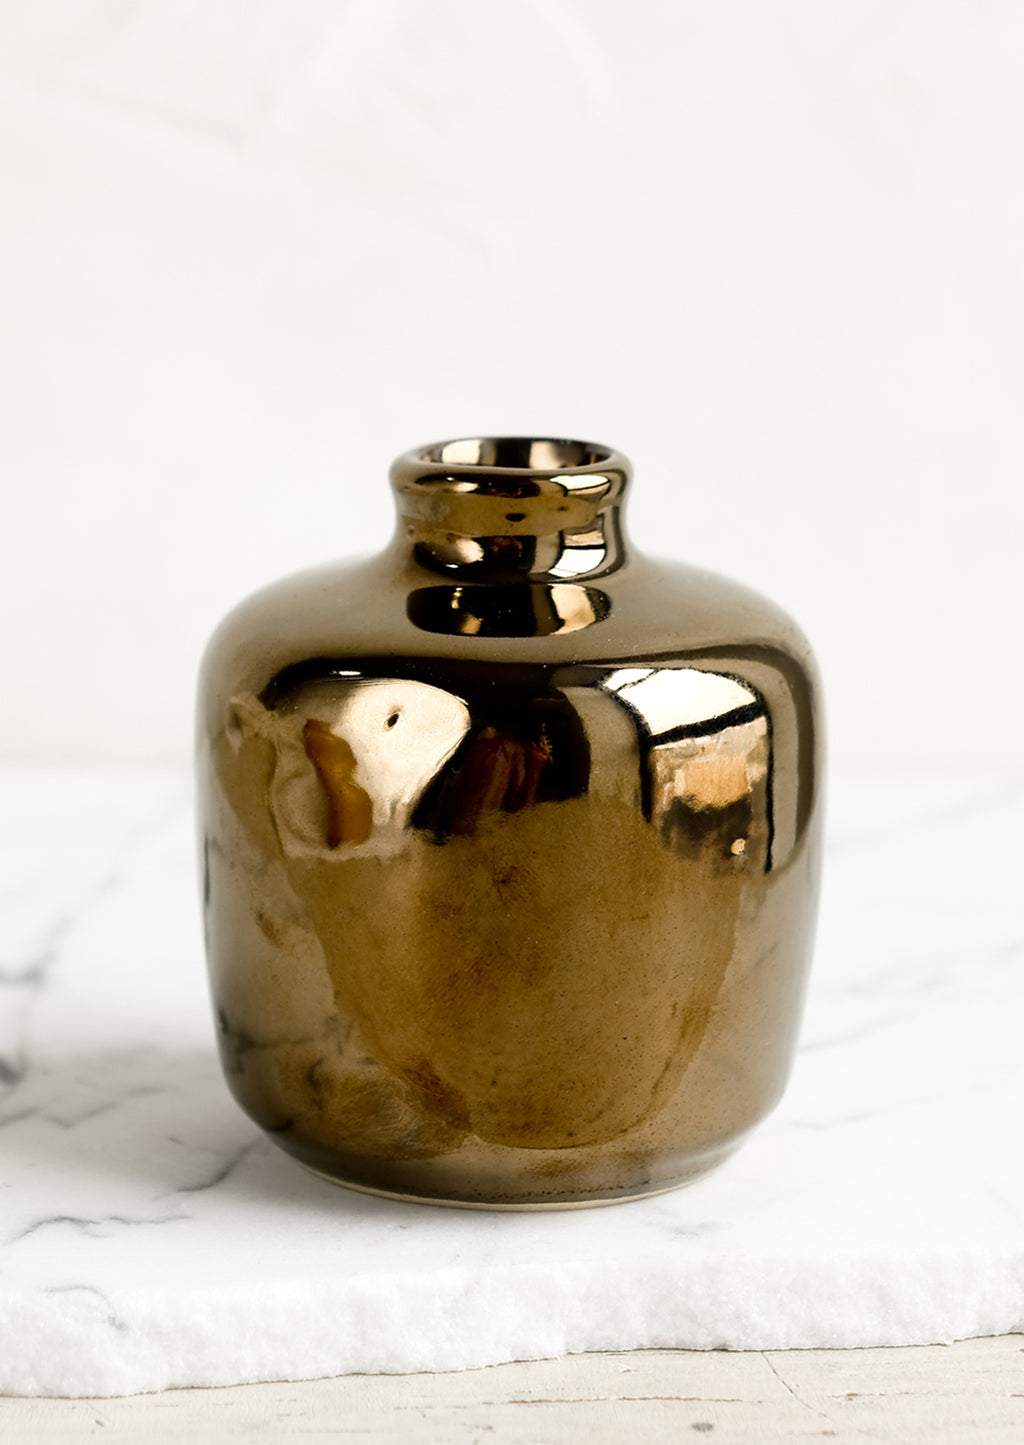 Short / Bronze: A ceramic bud vase in short shape, bronze color.